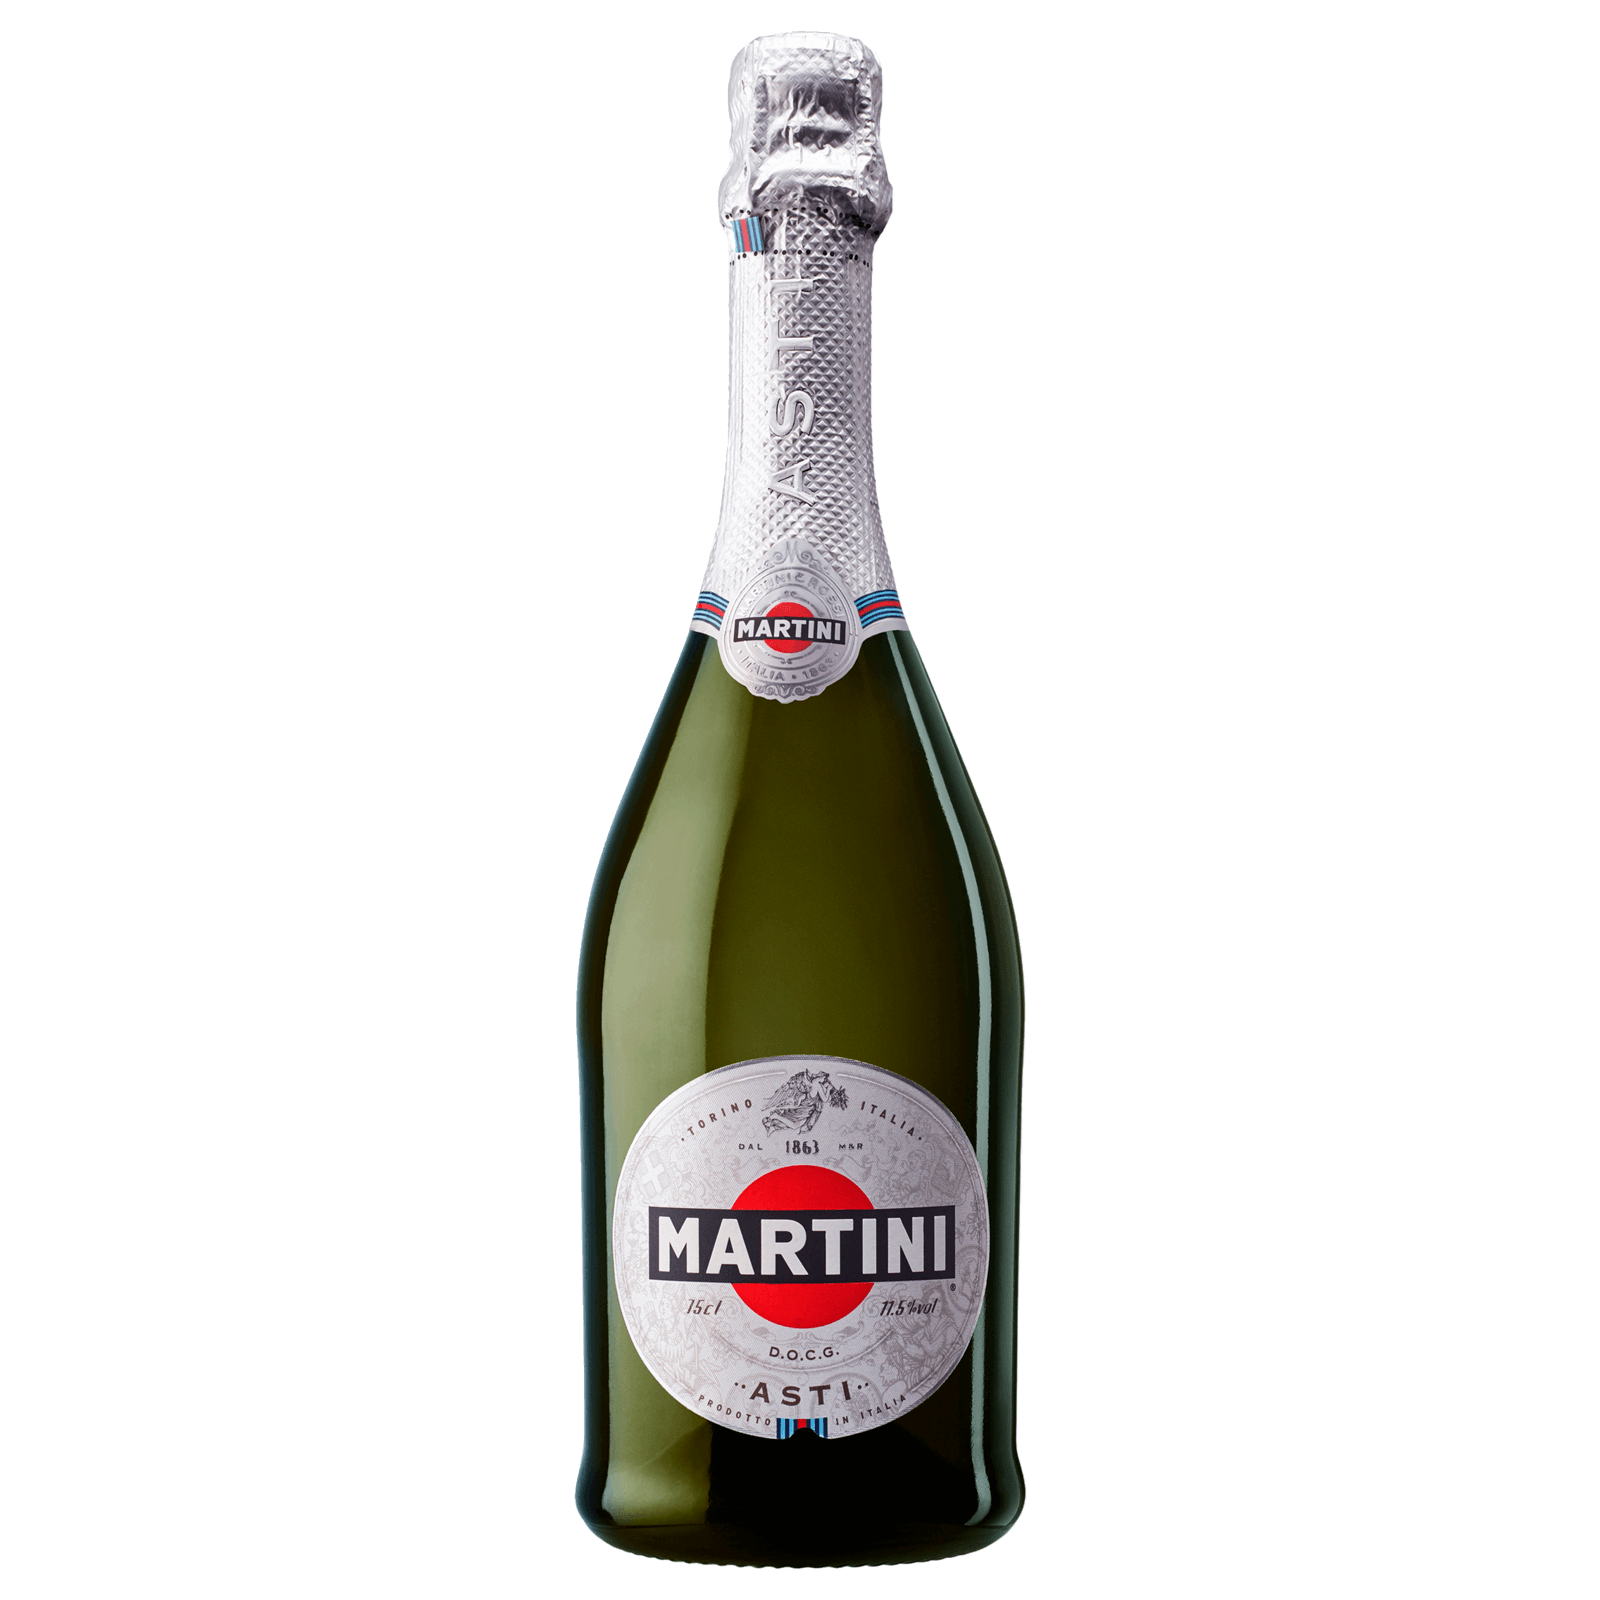 Martini Asti Spumante DOCG bei online 0,75l bestellen! REWE